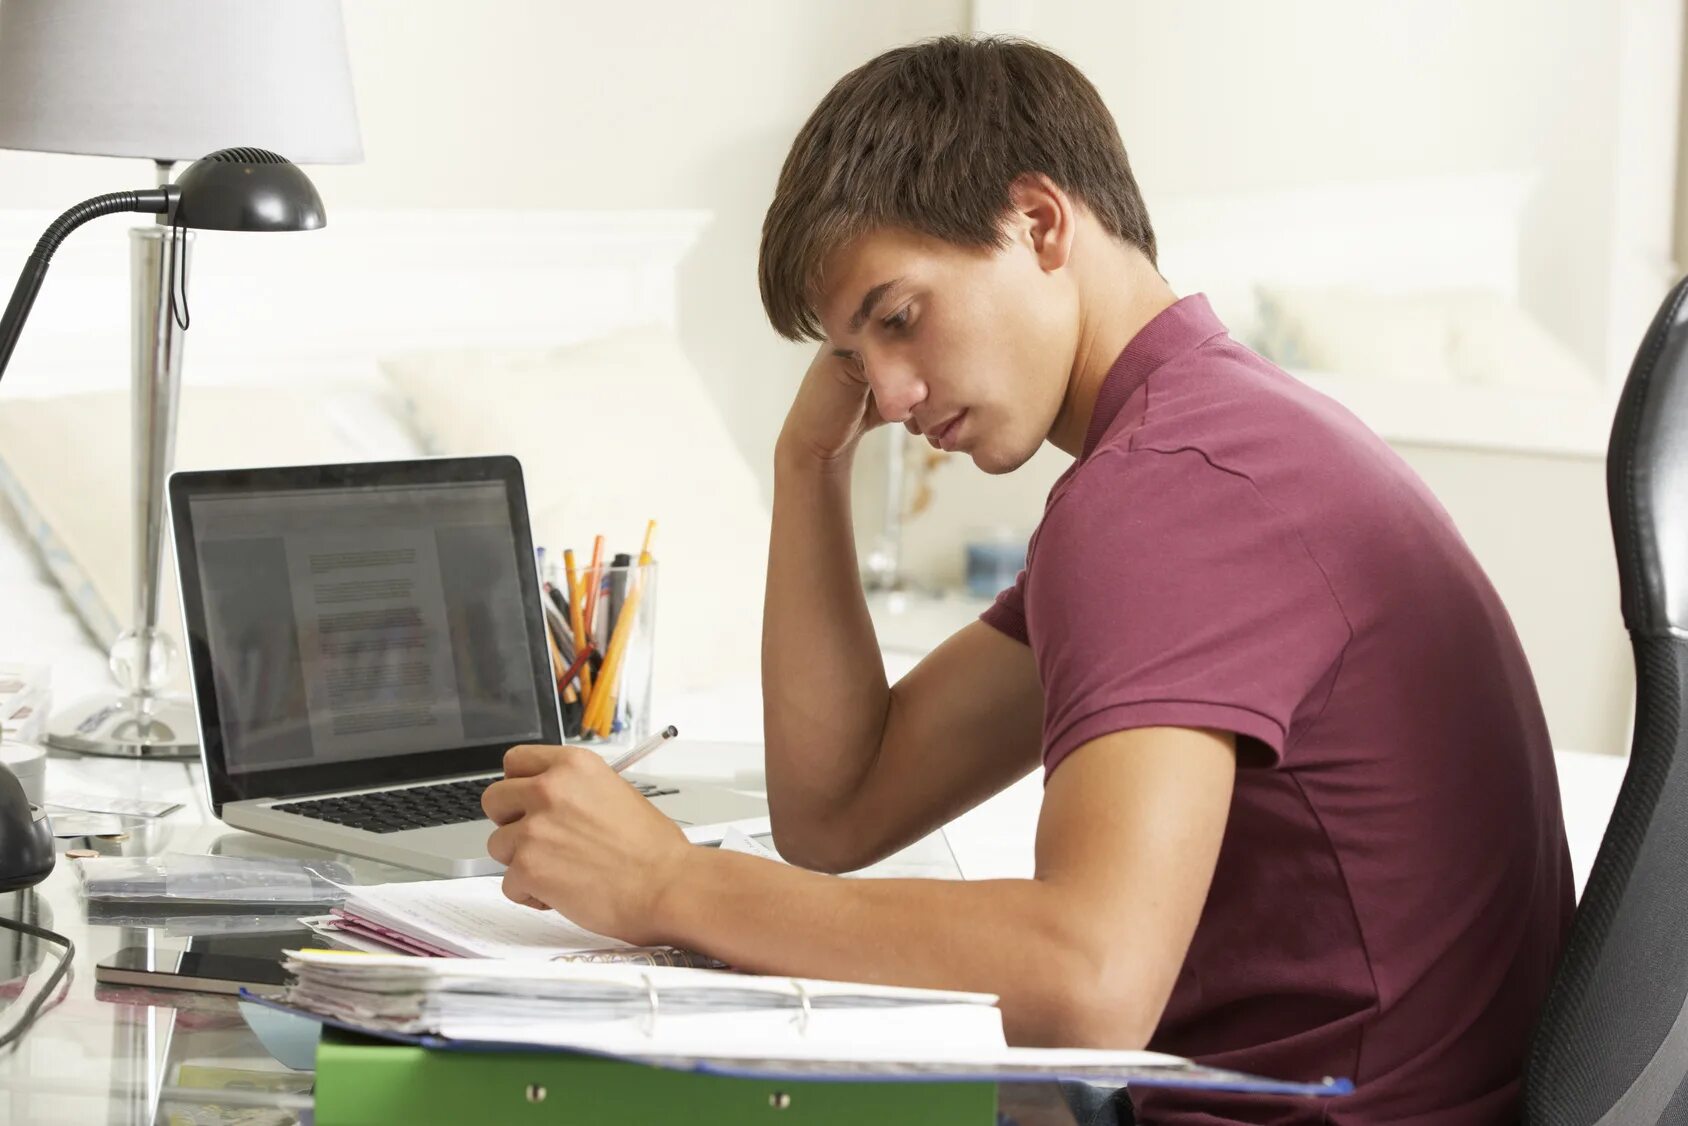 Обучение и стресс. Человек за компьютером. Компьютер и человек. Студент с компьютером. Подросток за компьютером.